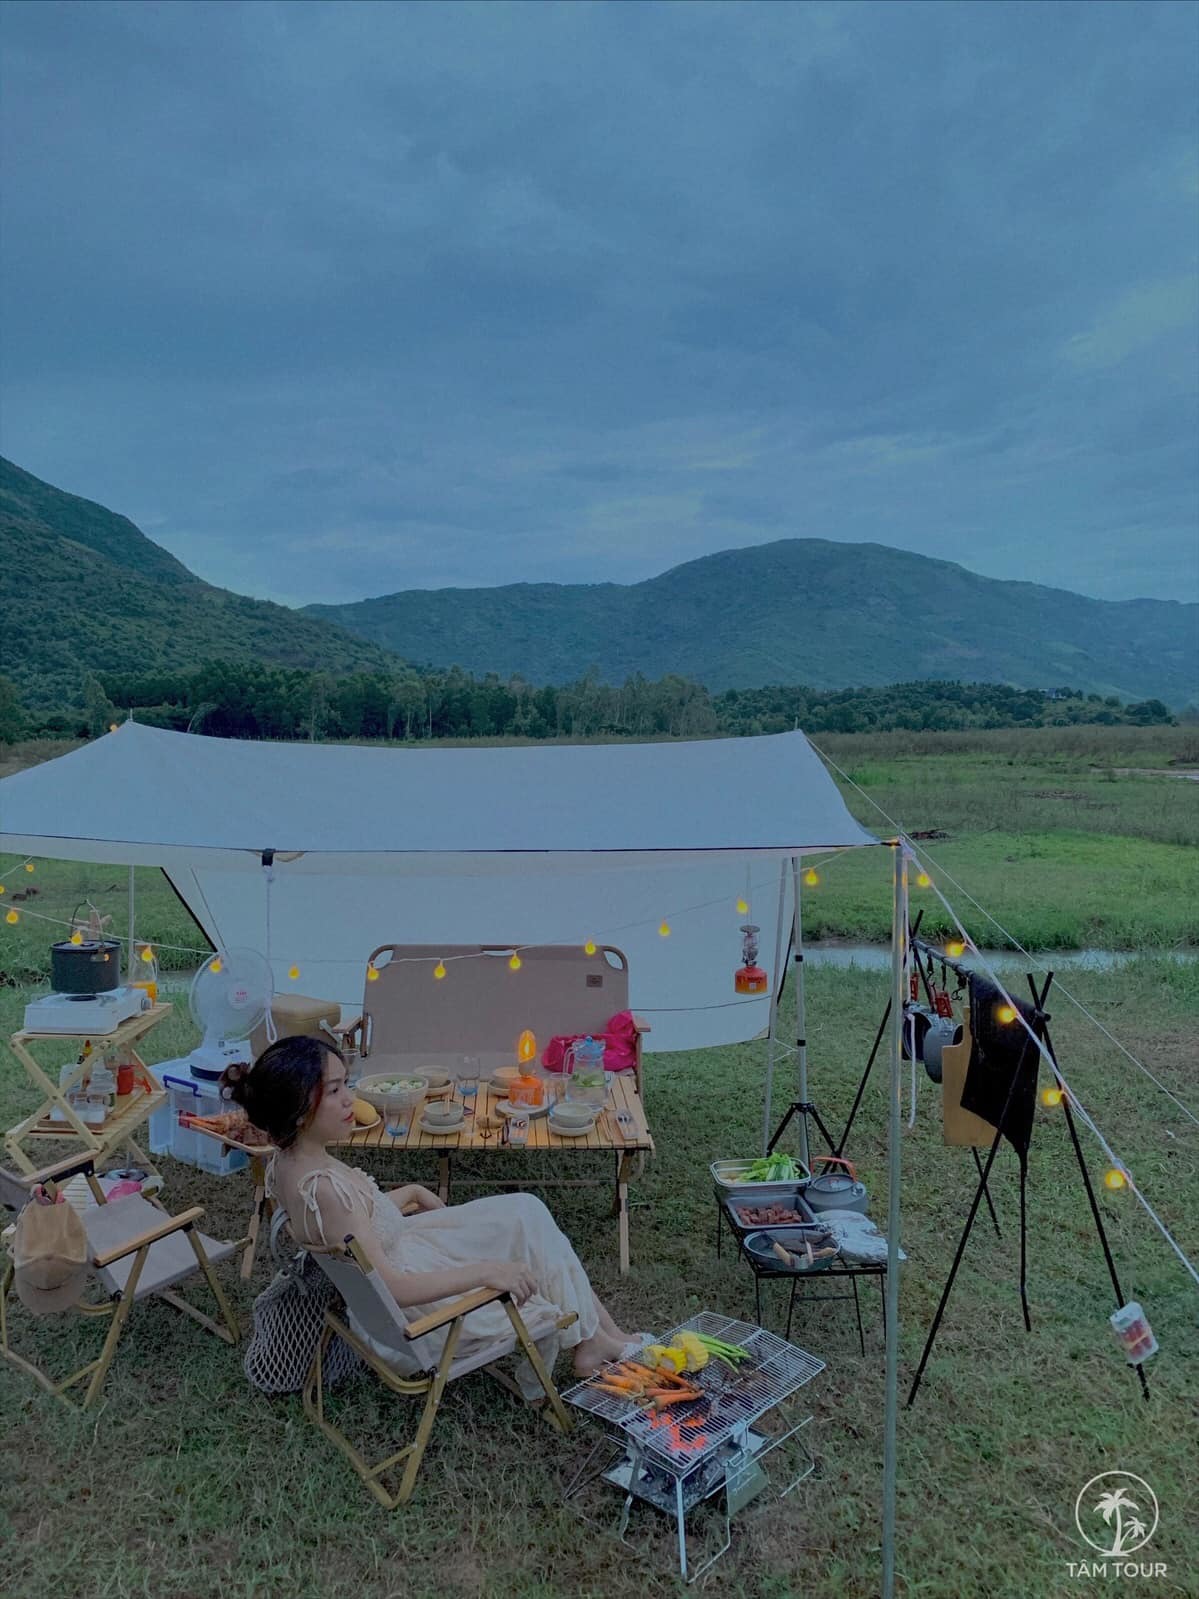 Buổi chiều ngồi chill - Cùng Tâm Tour cắm trại giữa núi rừng Nha Trang đẹp tựa tranh vẽ 3